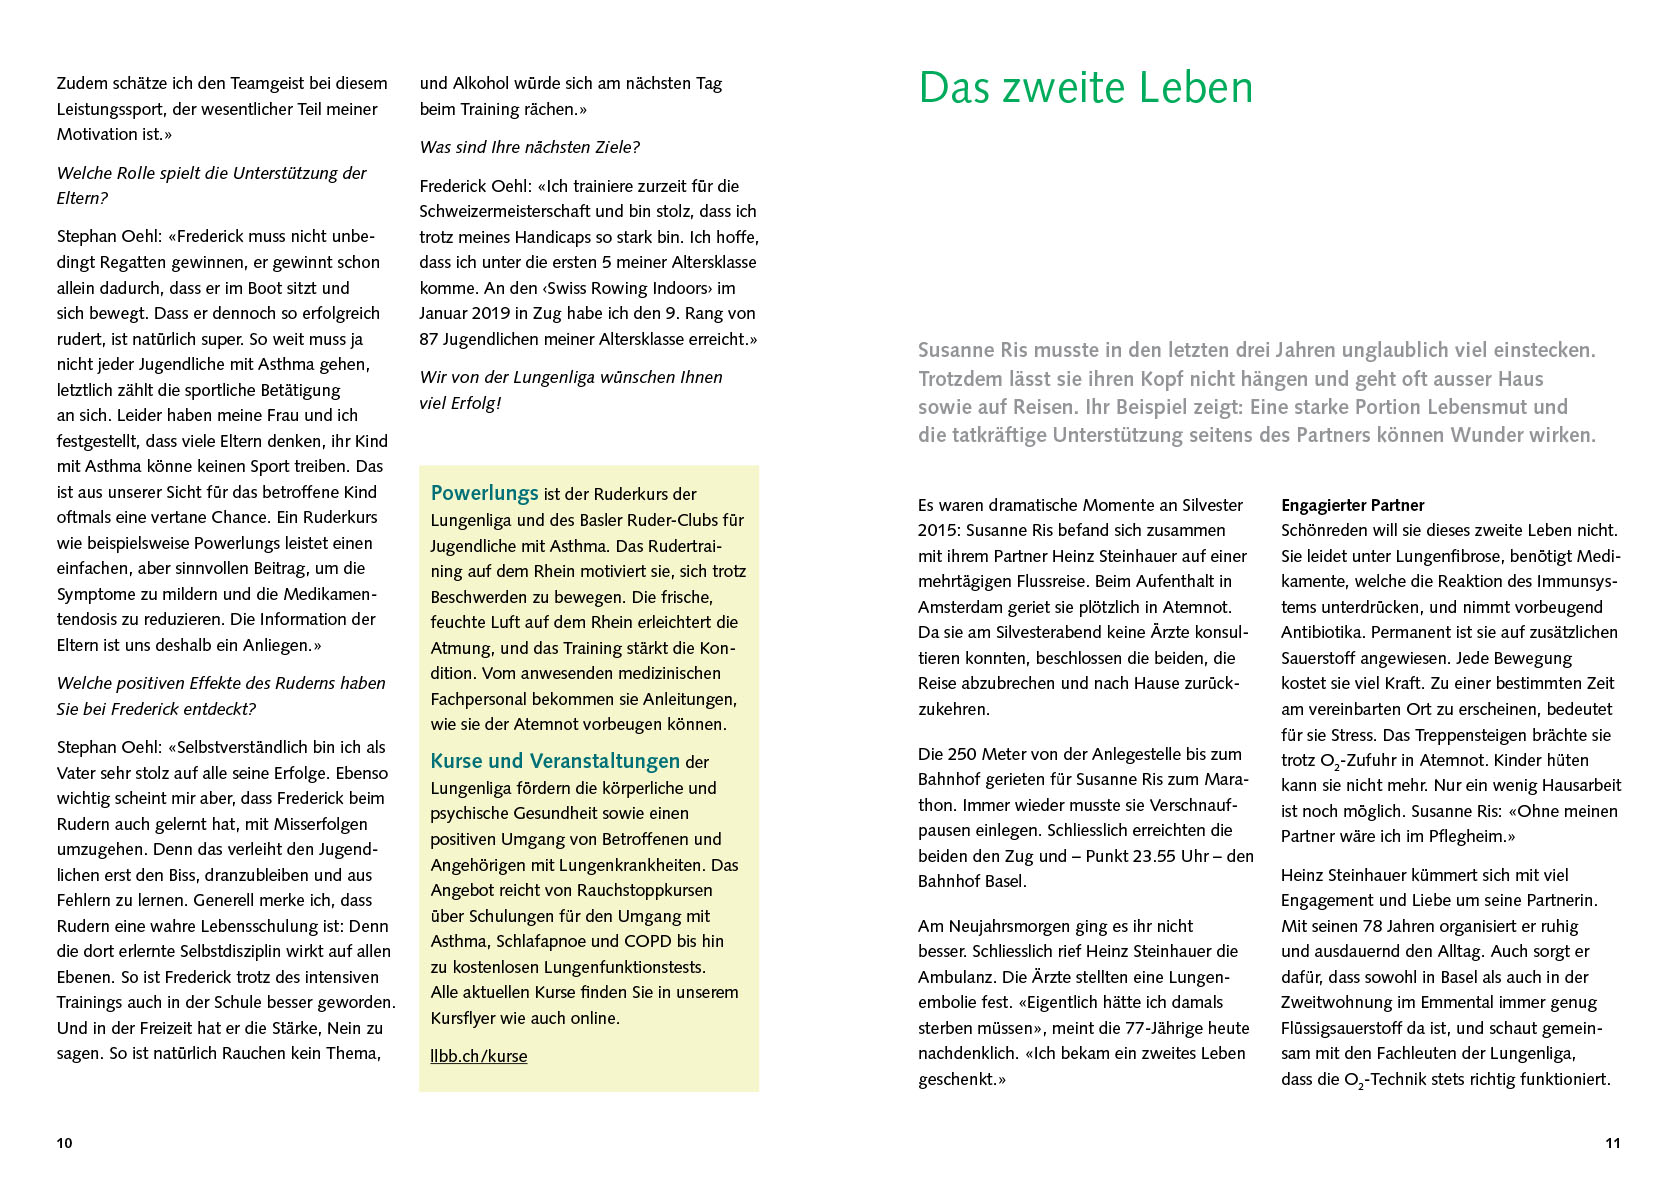 Jahresbericht der Lungenliga, von der Kommunikationsagentur dialogika Basel